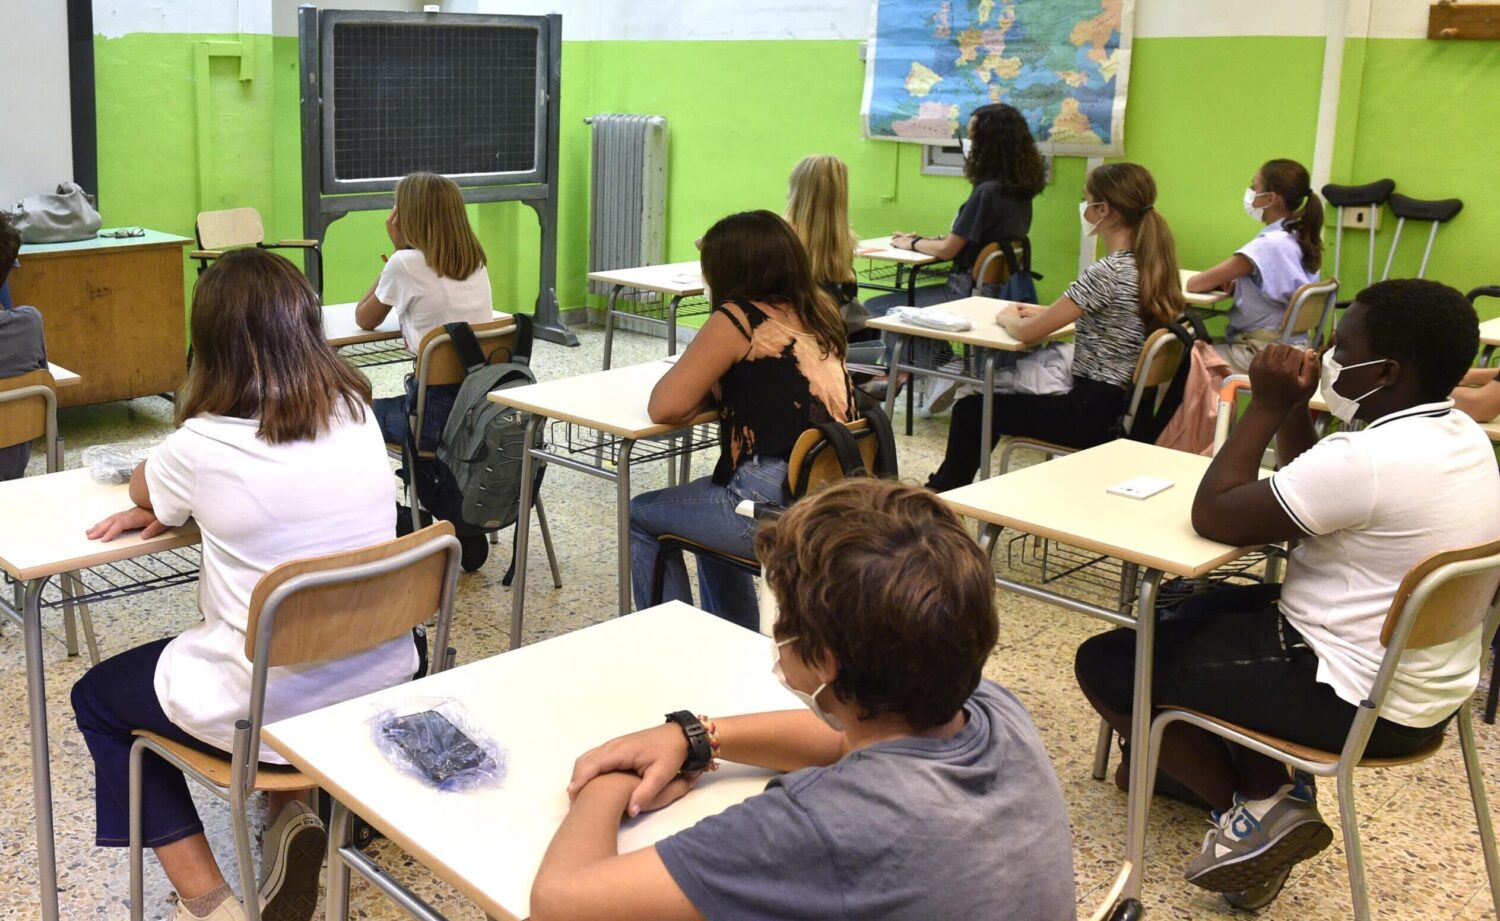 Dispersione scolastica, la Campania ha invertito la rotta. Dopo anni il fenomeno comincia a diminuire